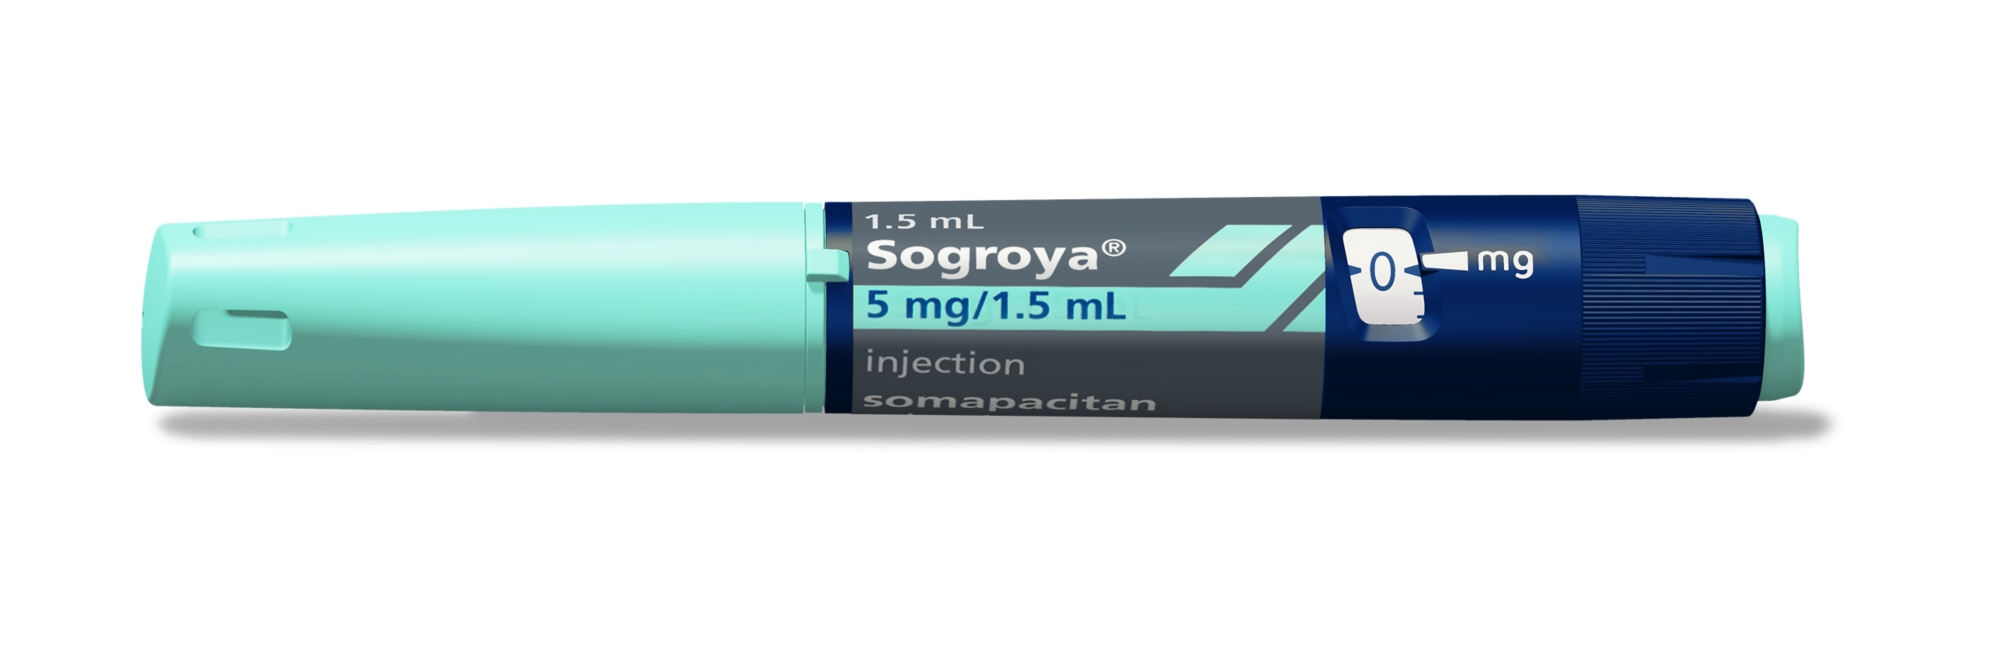 Sogroya pen 5 mg/1.5 mL